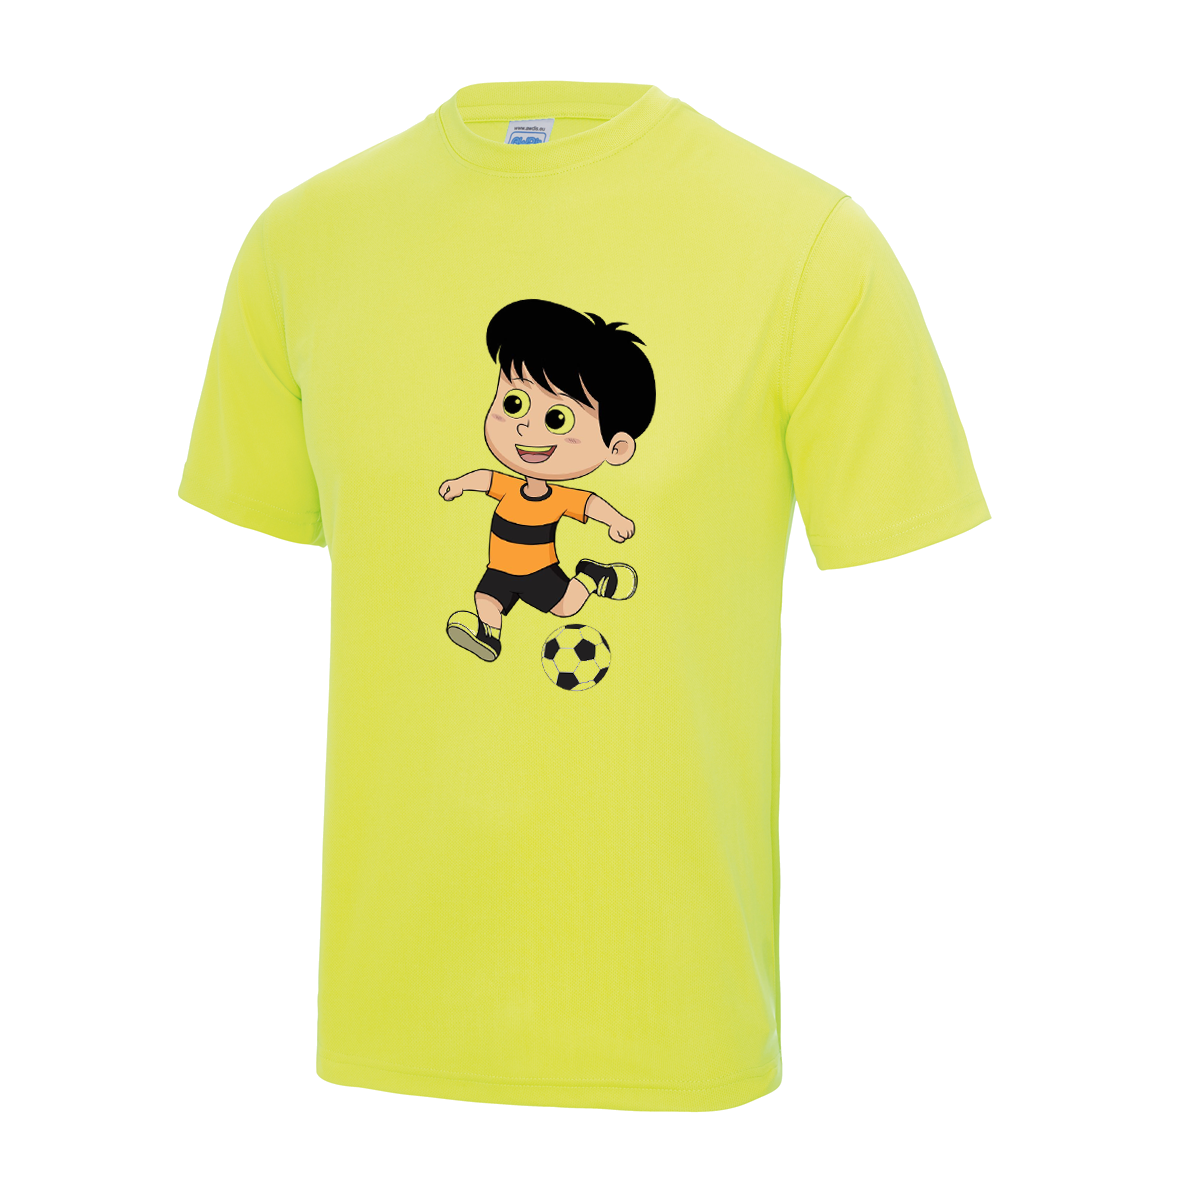 Kinder T Shirt mit Junge der Fußball spielt 104 - 158